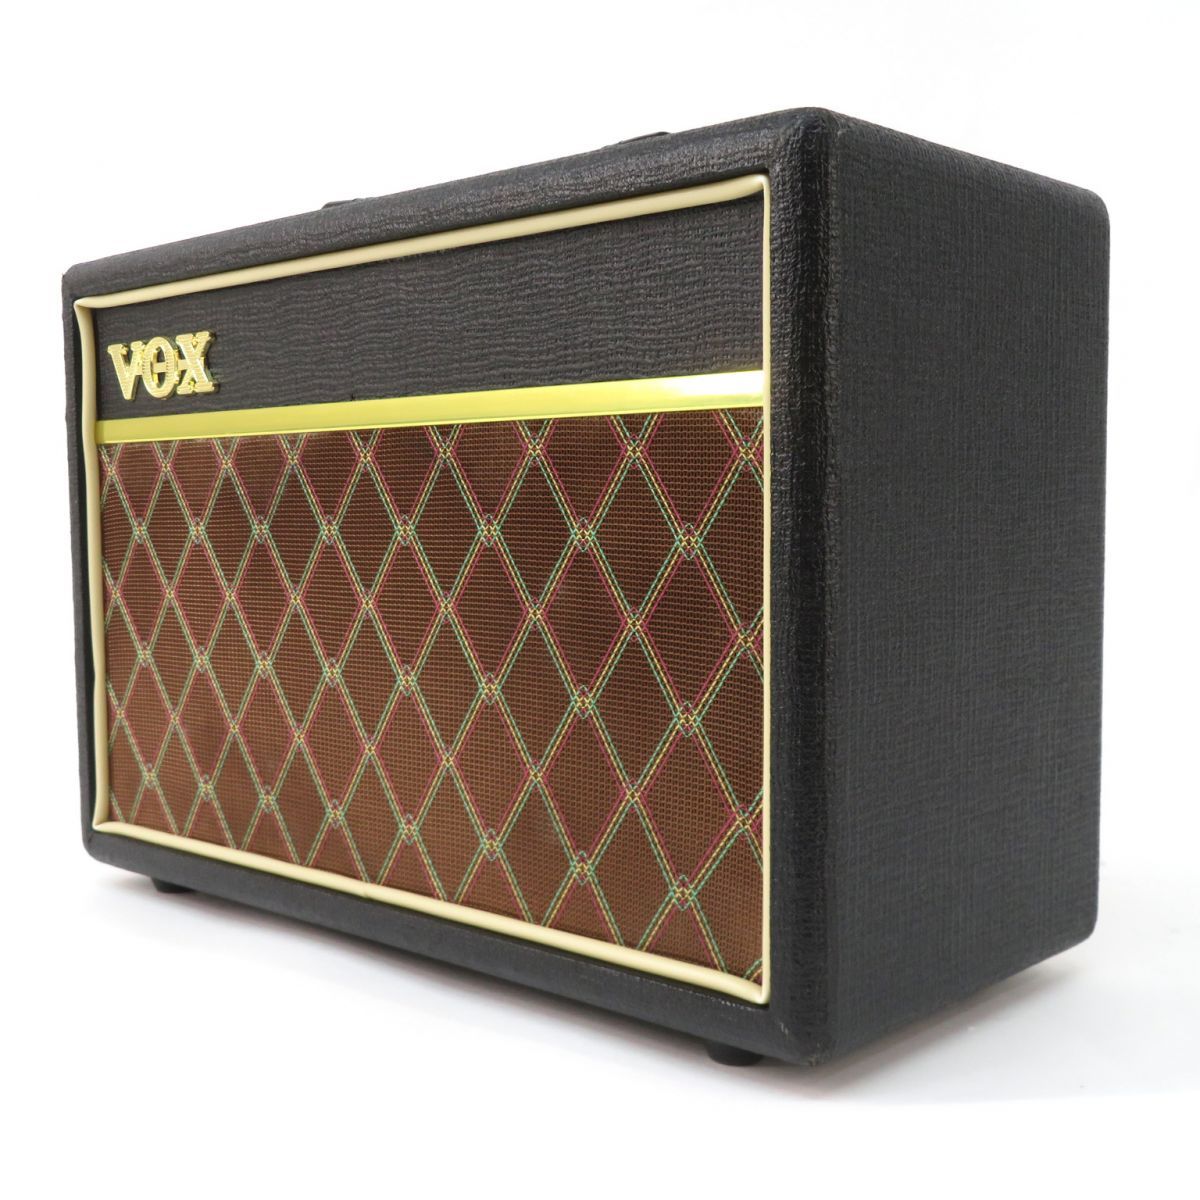 VOX ヴォックス ボックス V9106 Pathfinder 10 ギター用 アンプ コンボ 